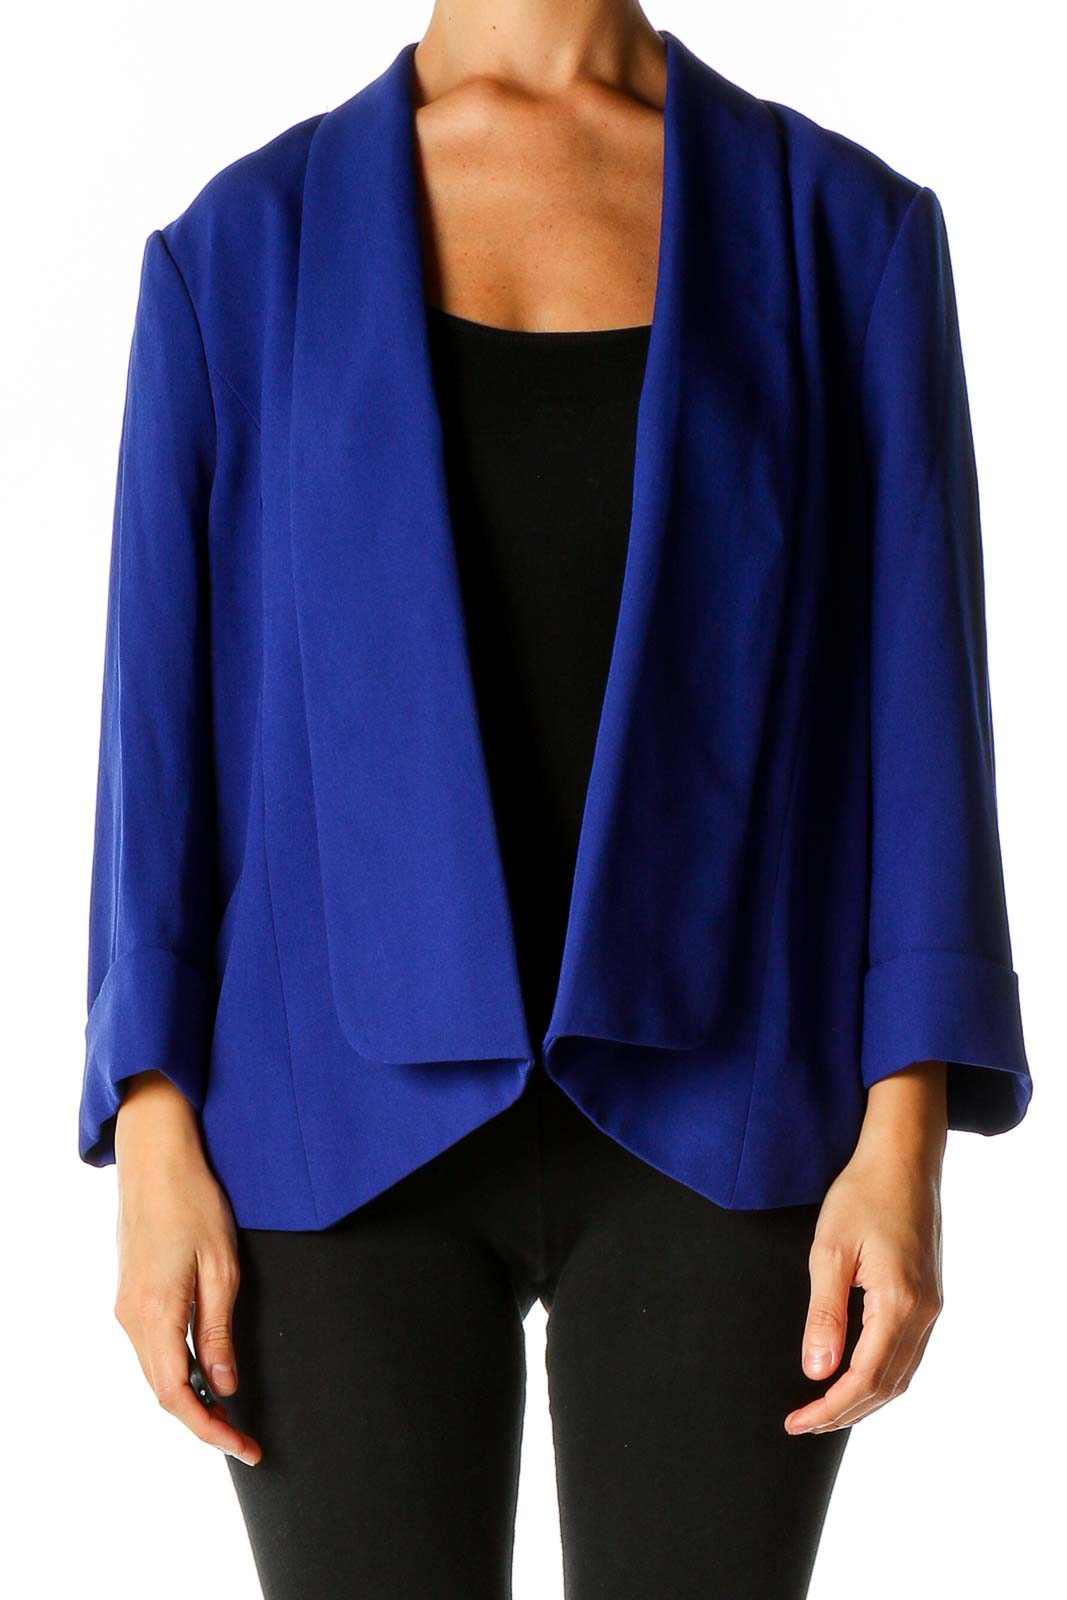 Kasper Petite Womens Open Front Blazer Size 12P Blue Lined Long Sleeve